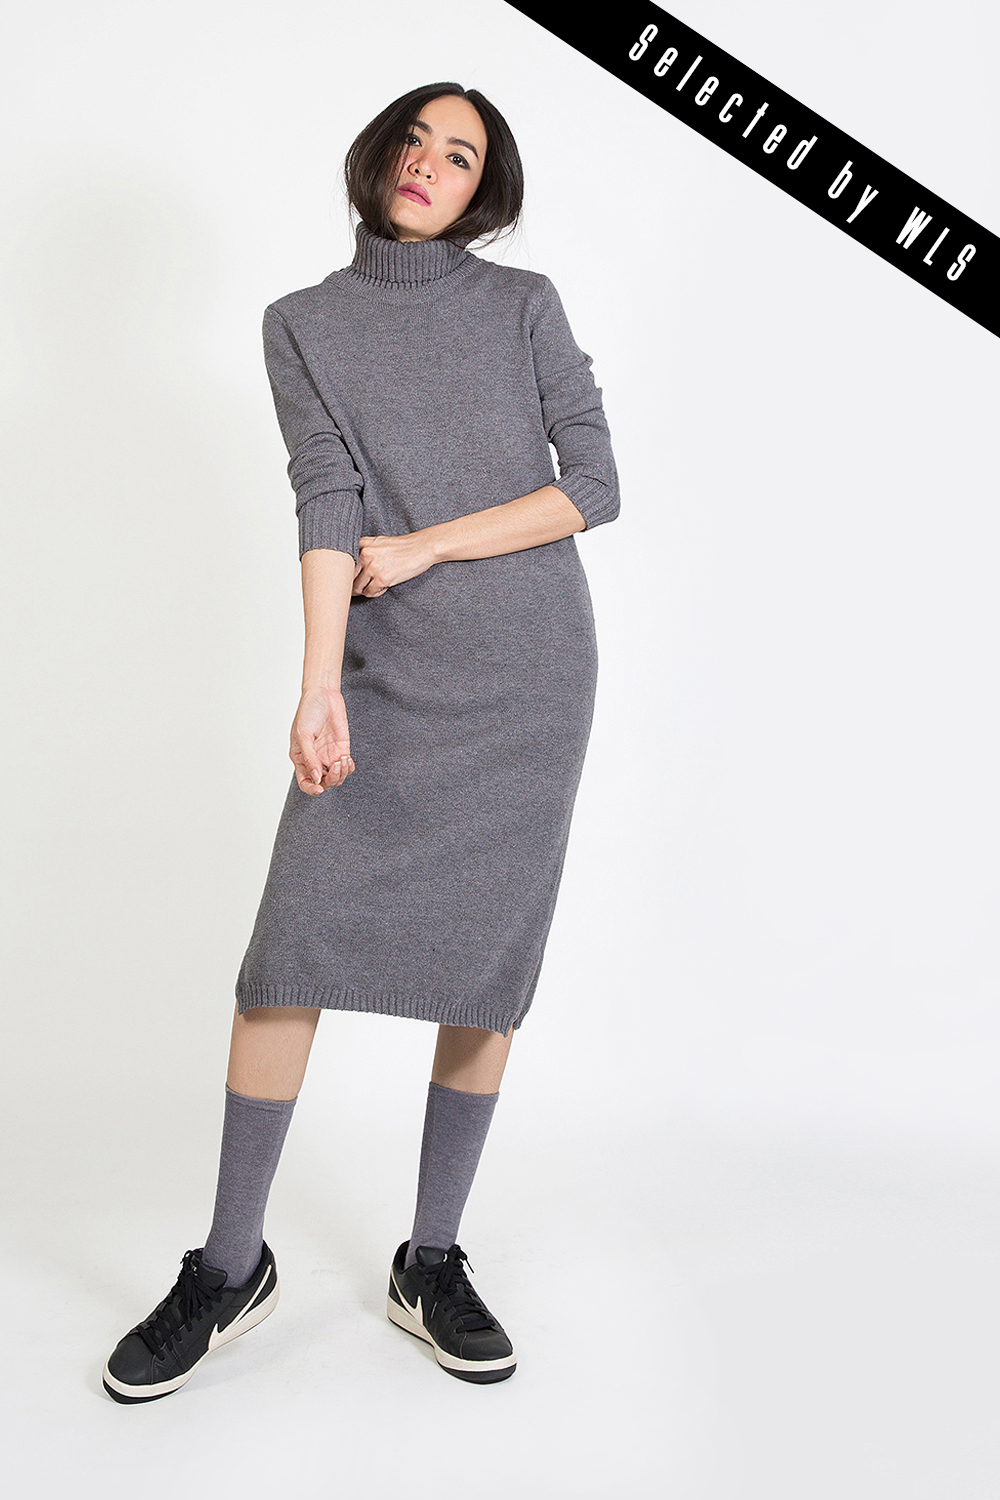 เดรสไหมพรมแคชเมียร์  Sweater Dresses  (with Split Turtleneck)  Selected  by WLS